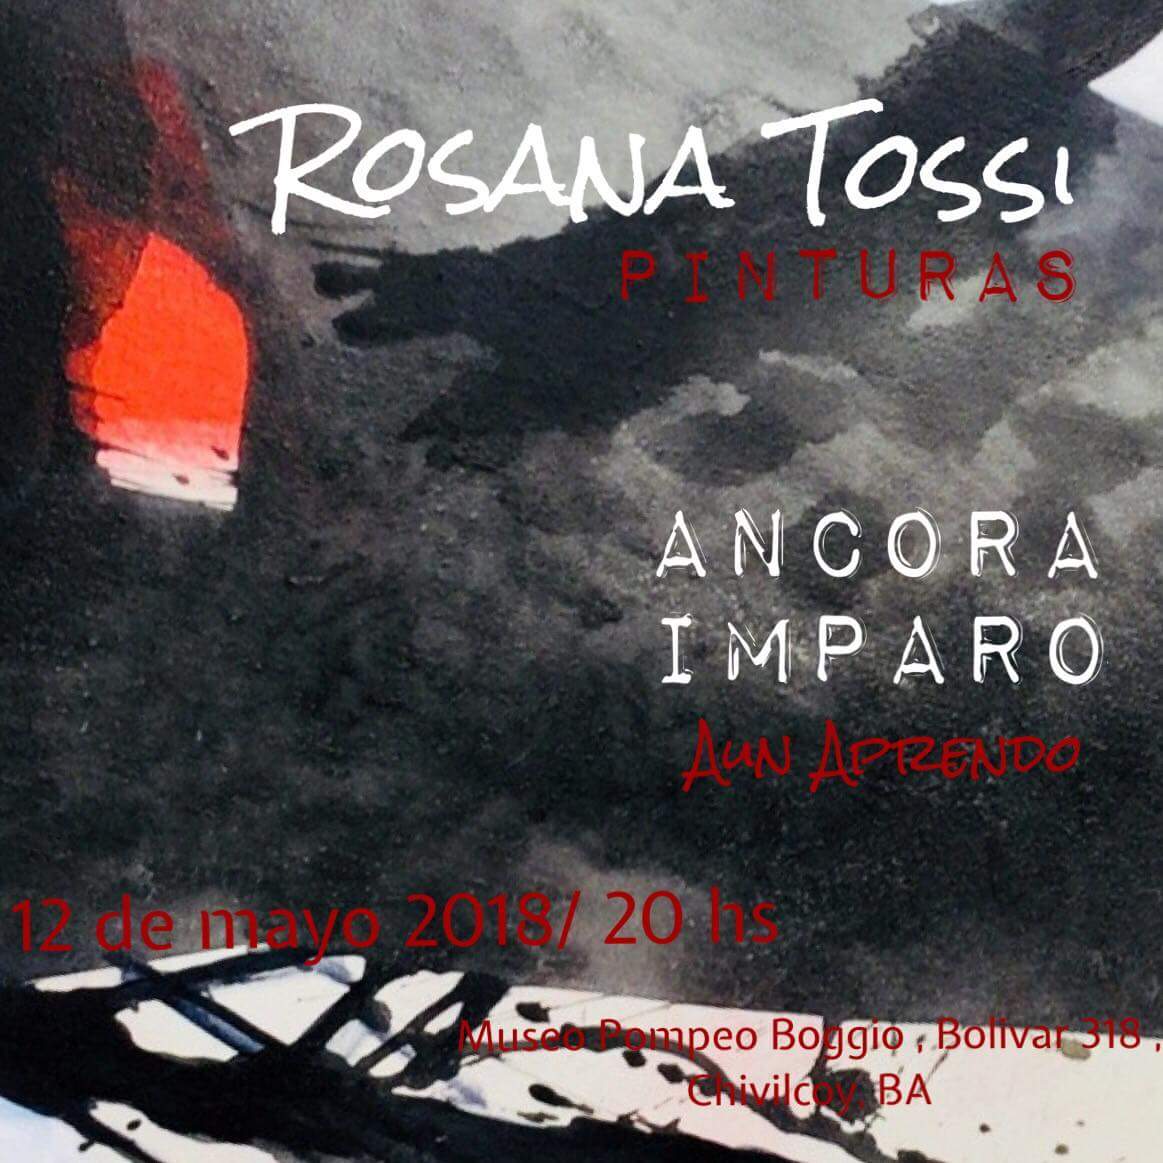 Museo Pompeo Boggio: “Ancora Imparo” nueva muestra de pinturas de Rosana Tossi